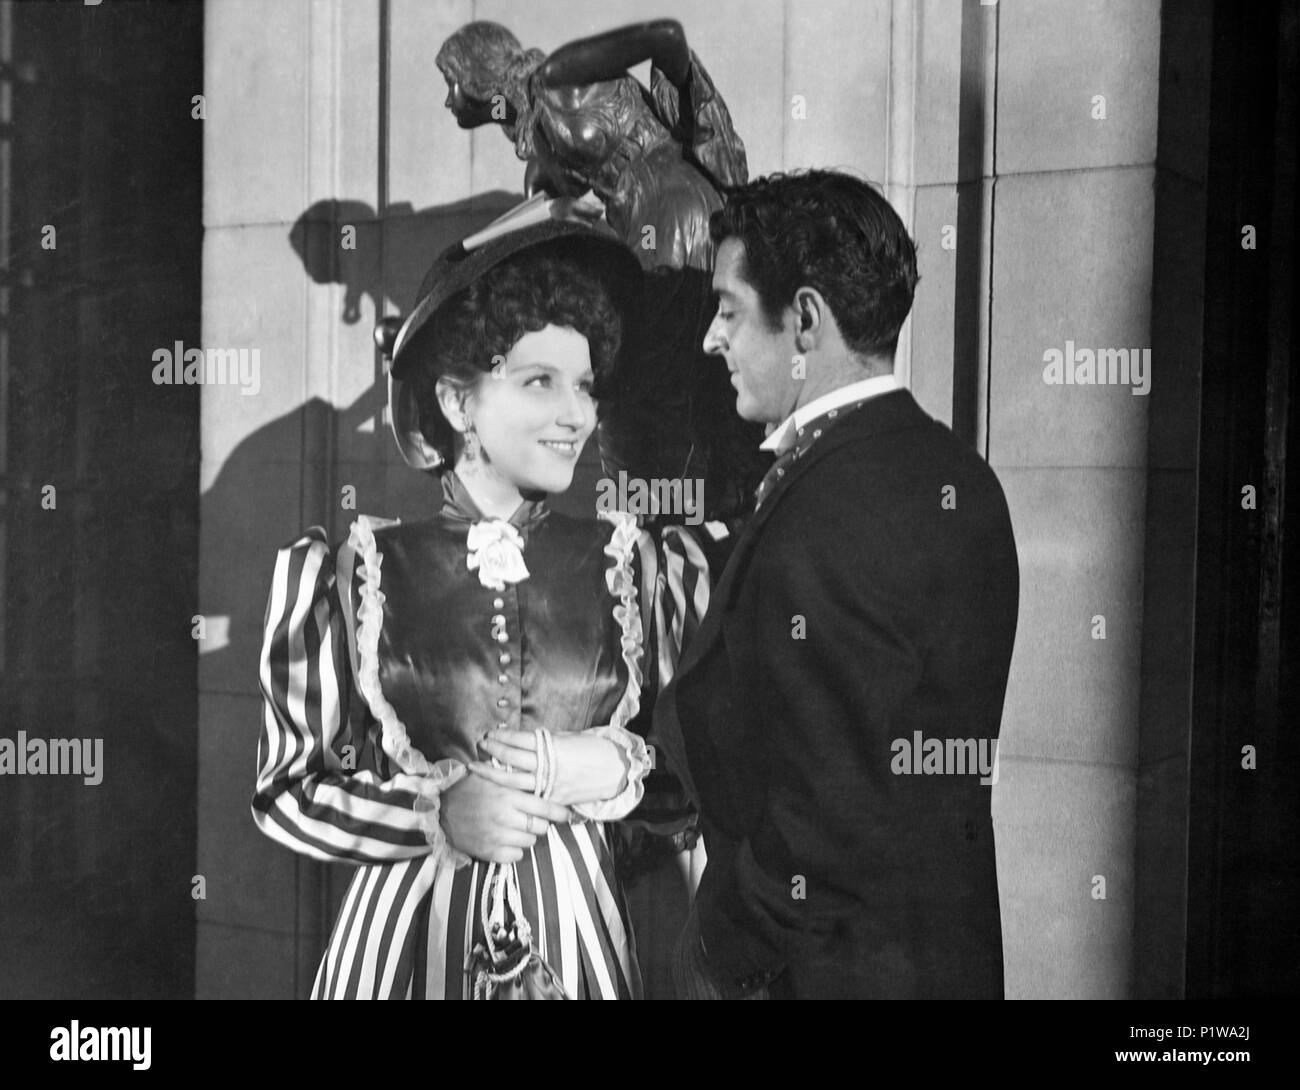 Original Film Title: BAJO EL CIELO DE ASTURIAS.  English Title: BAJO EL CIELO DE ASTURIAS.  Film Director: GONZALO DELGRAS.  Year: 1951.  Stars: MARIA ZALDIVAR. Stock Photo